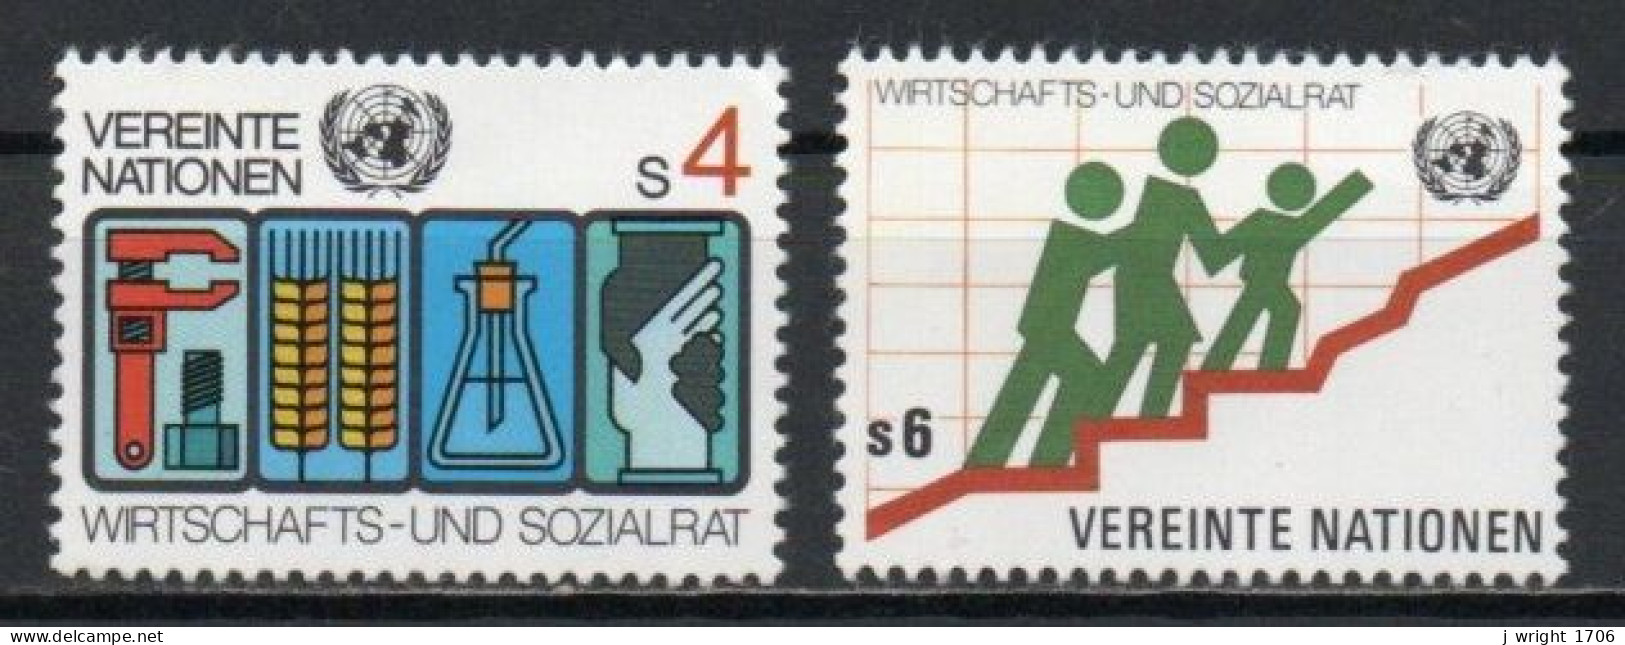 UN/Vienna, 1980, Economic & Social Council, Set, MNH - Neufs